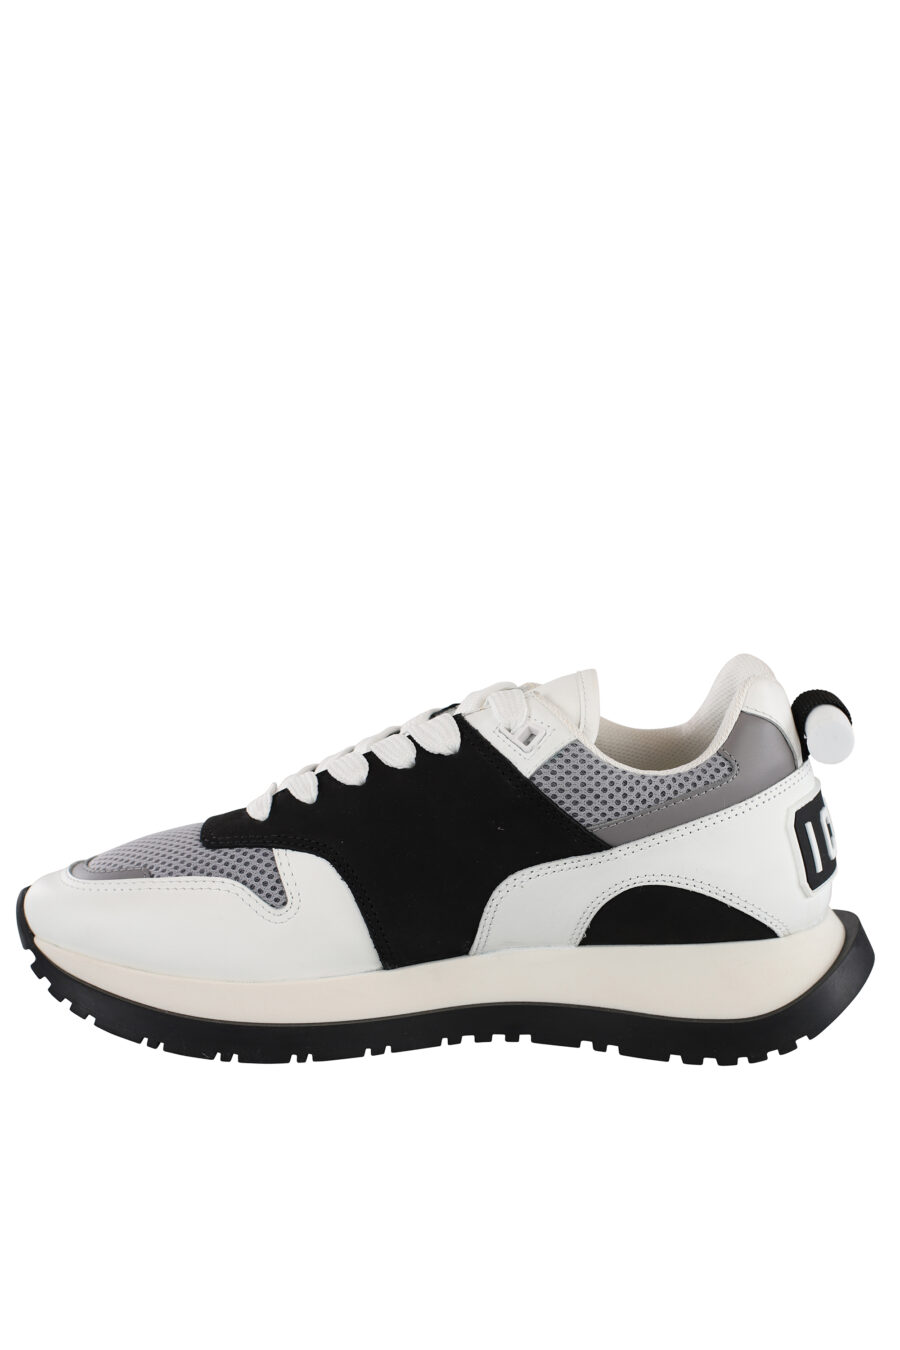 Zapatillas blancas con negro y detalle gris con logo en suela - IMG 6891